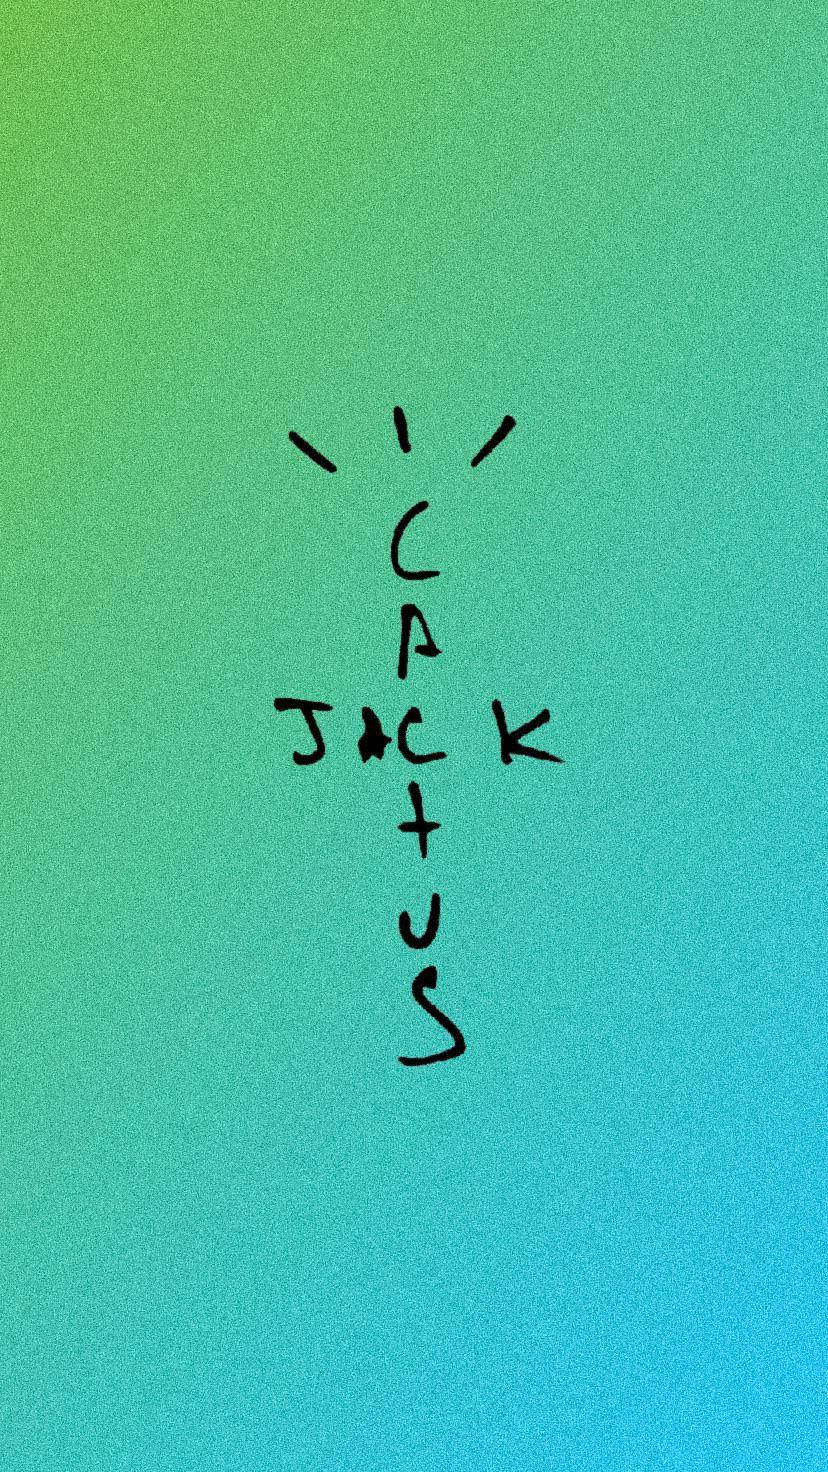 Download Cactus Jack Travis Scott Text Logo Green And Black Wallpaper |  Wallpapers.Com